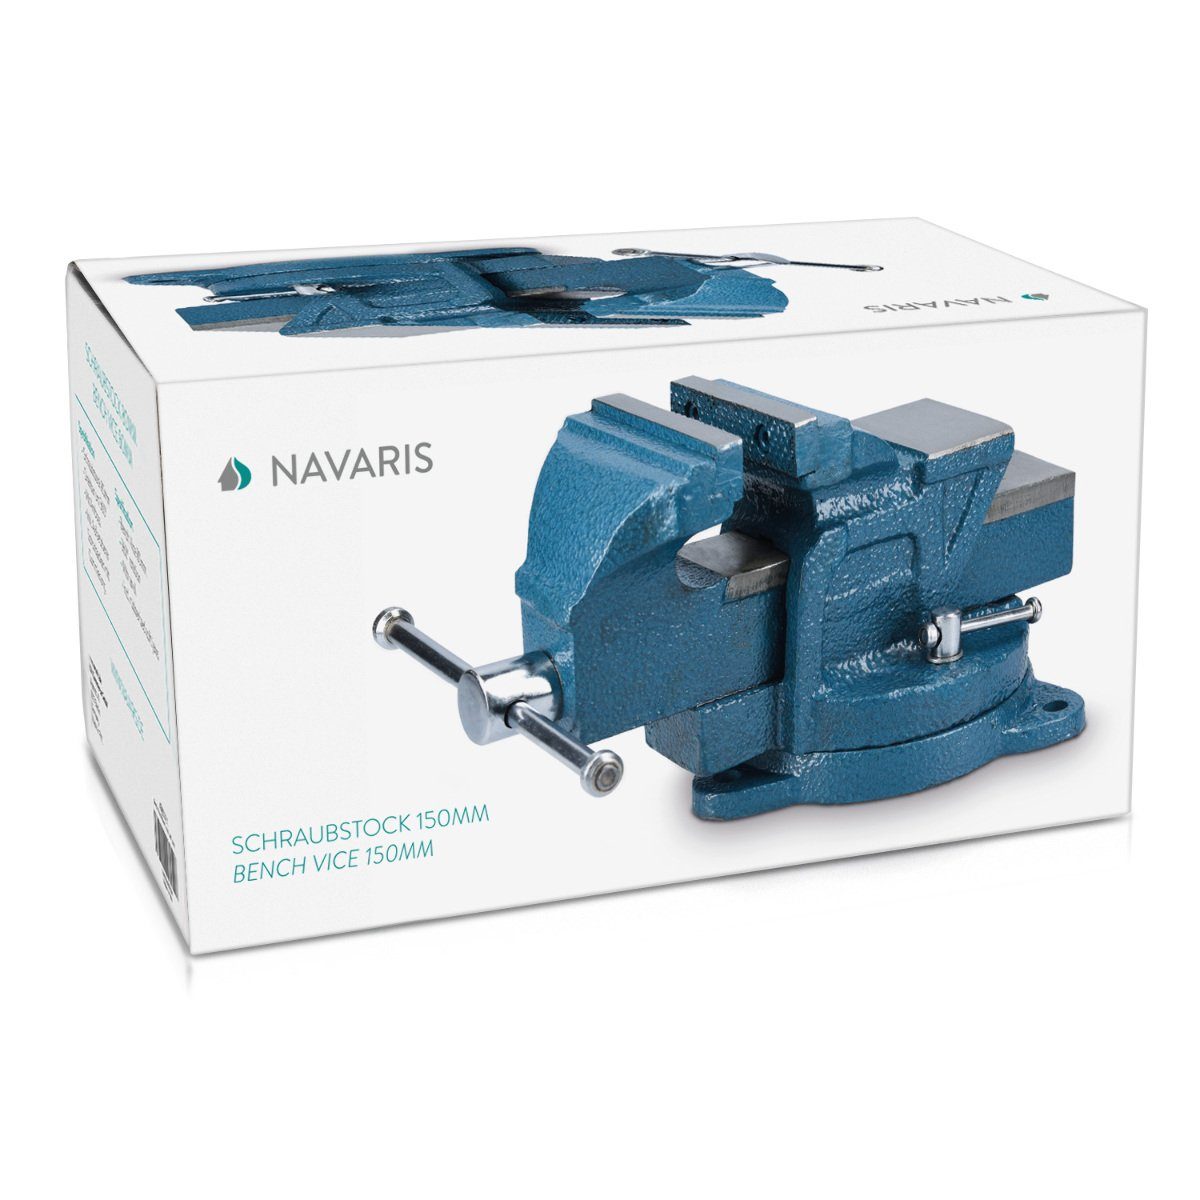 Navaris Schraubstock Schraubstock 150mm aus Gusseisen, 135mm max. 2000kg - Spannweite